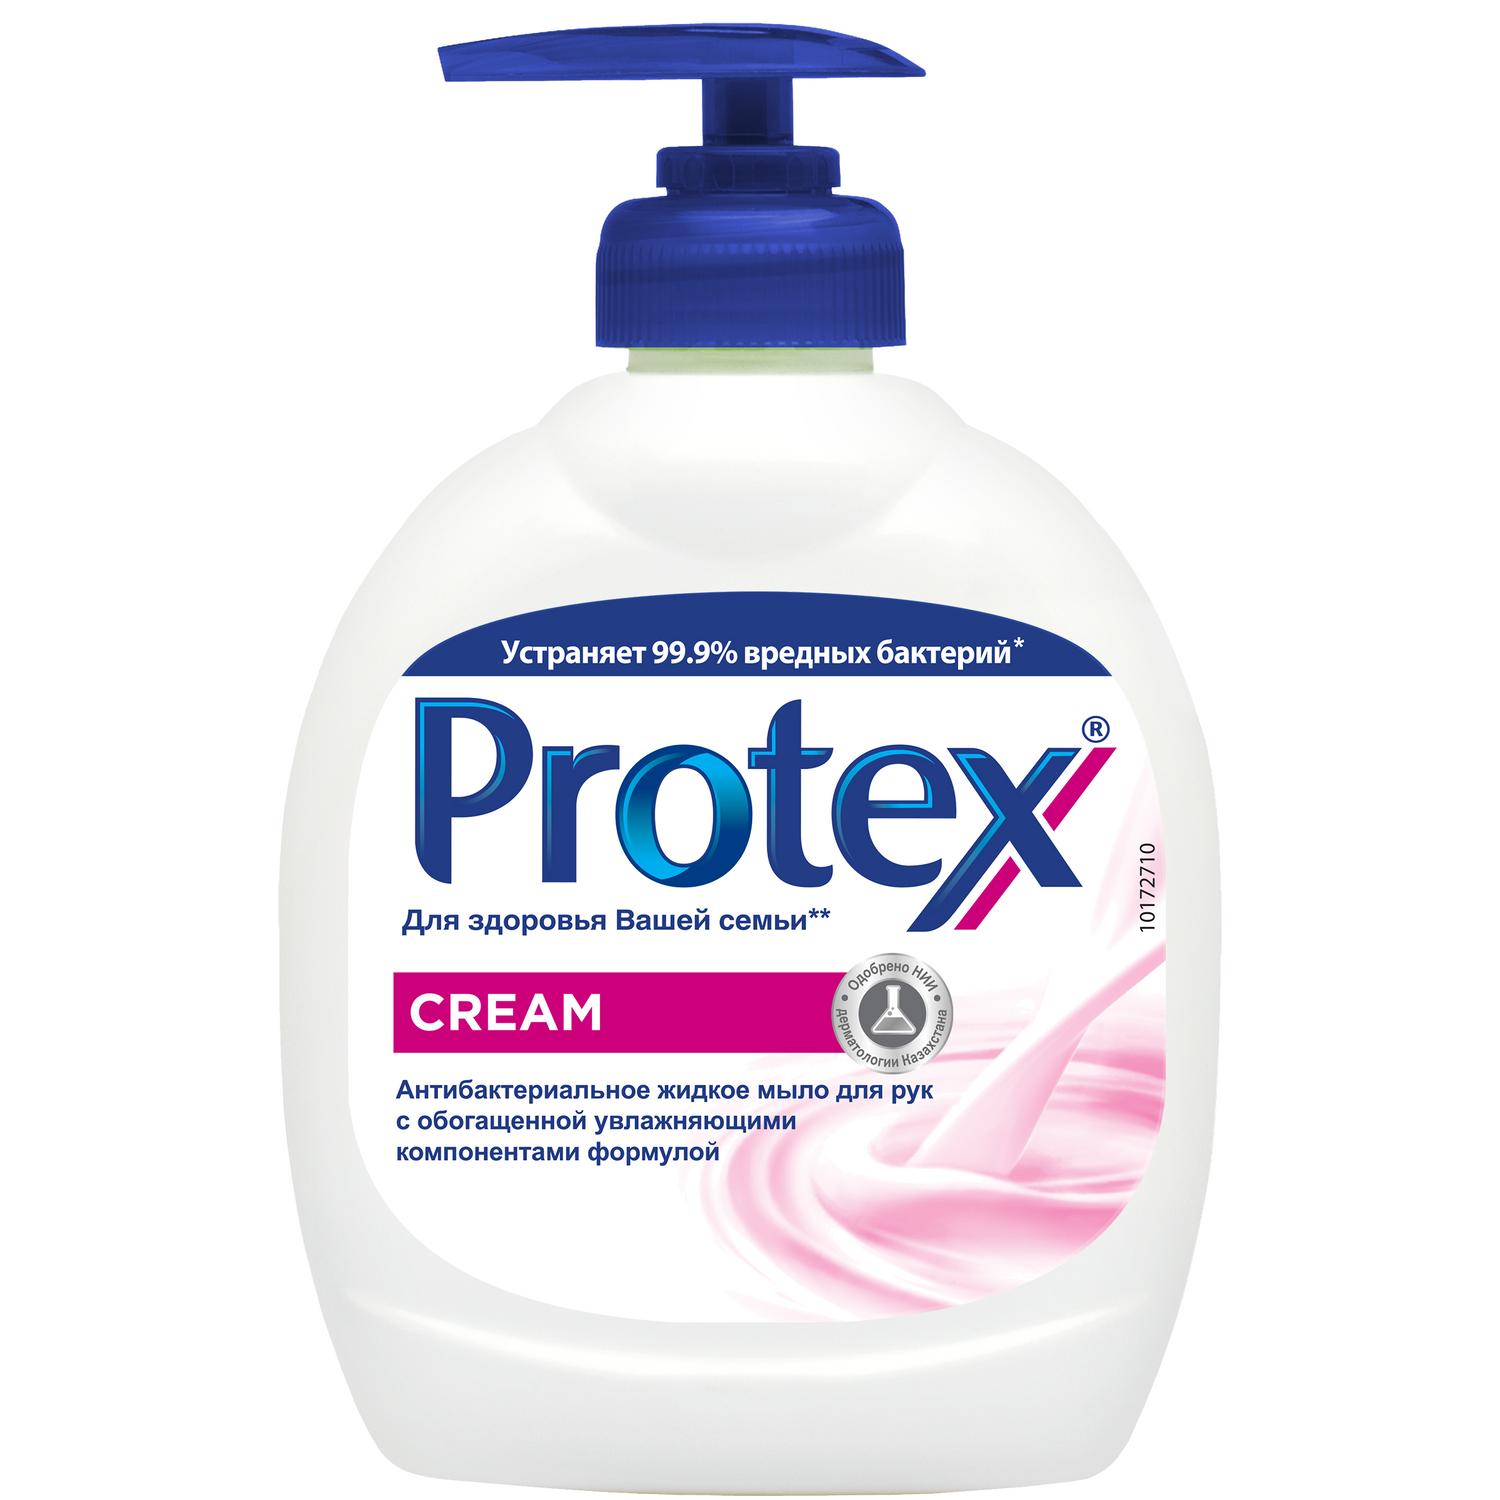 Protex Антибактериальное жидкое мыло для рук Cream, 300 мл мыло жидкое freshweek нейтральное антибактериальное 300 мл